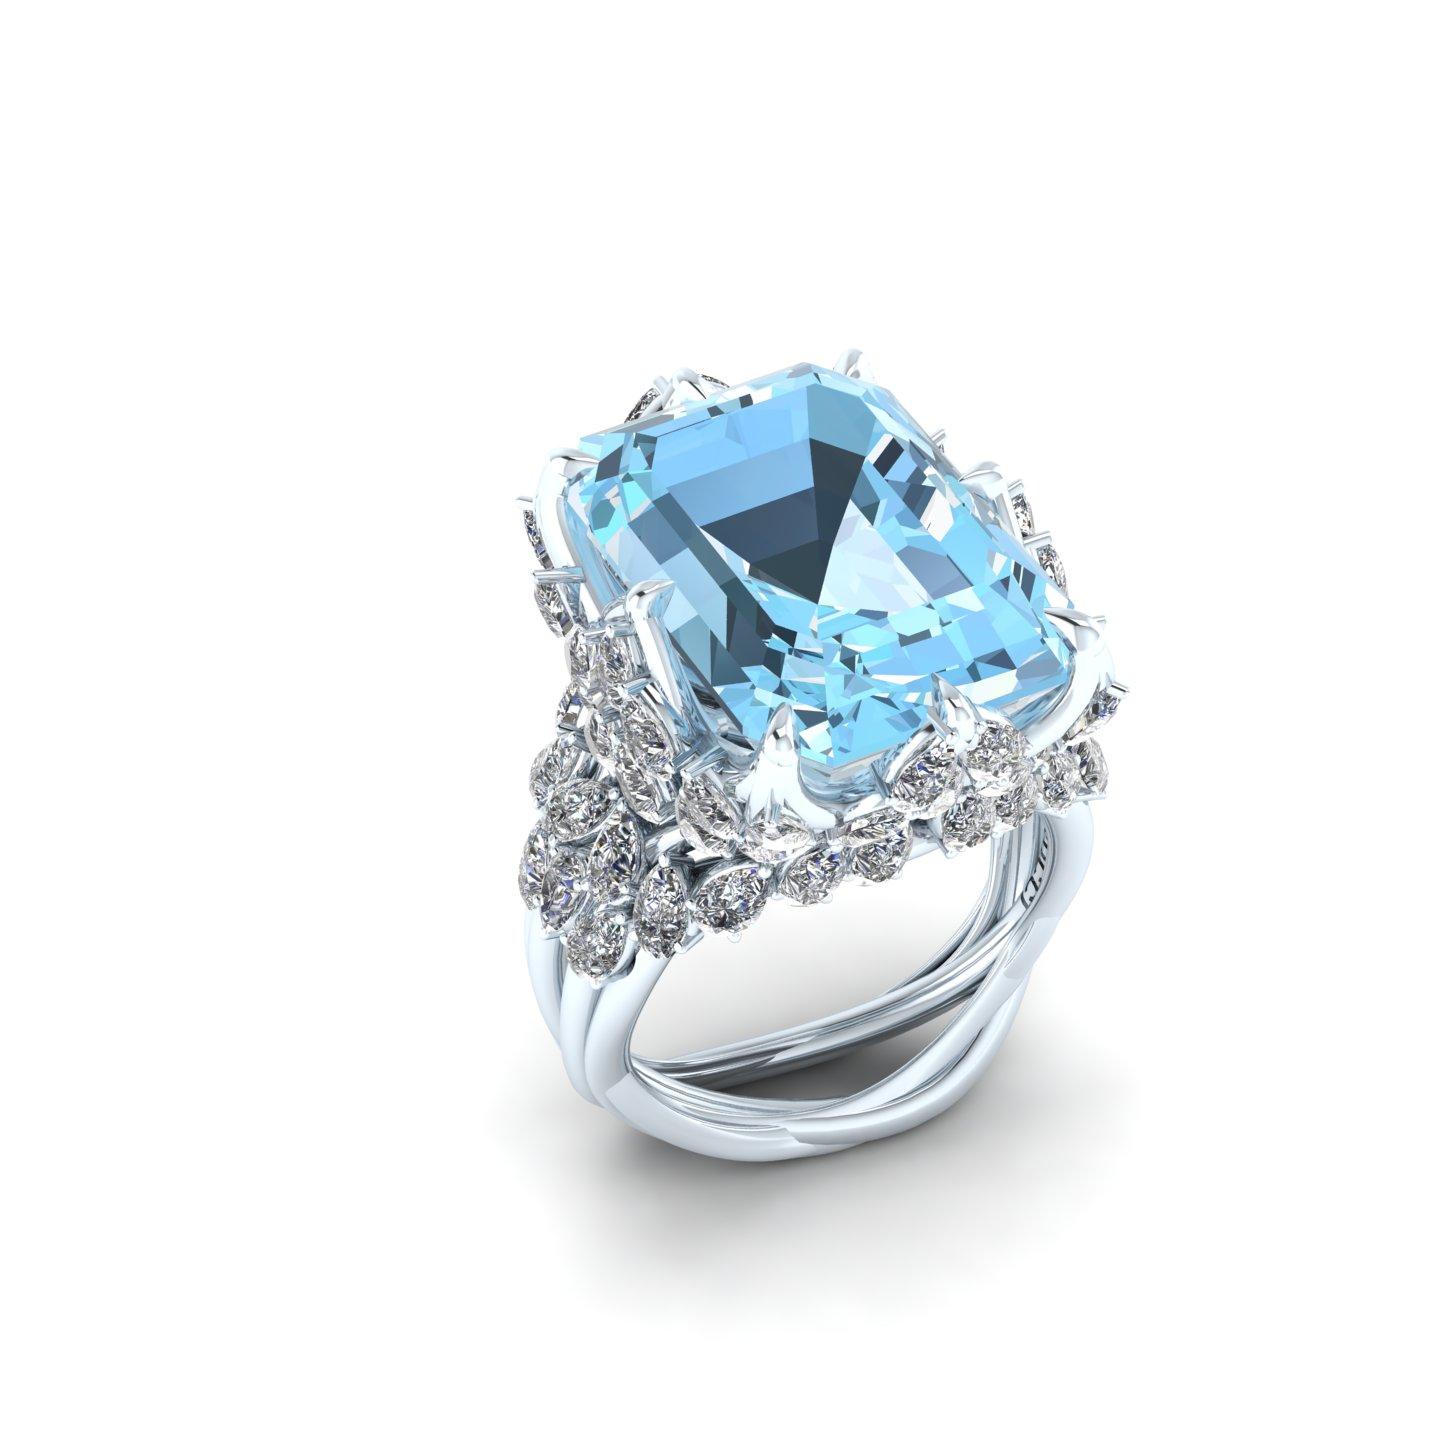 Emerald Cut Ferrucci 17.40 Carat Emerald Aquamarine Diamonds in 18k White Gold Diamond Ring